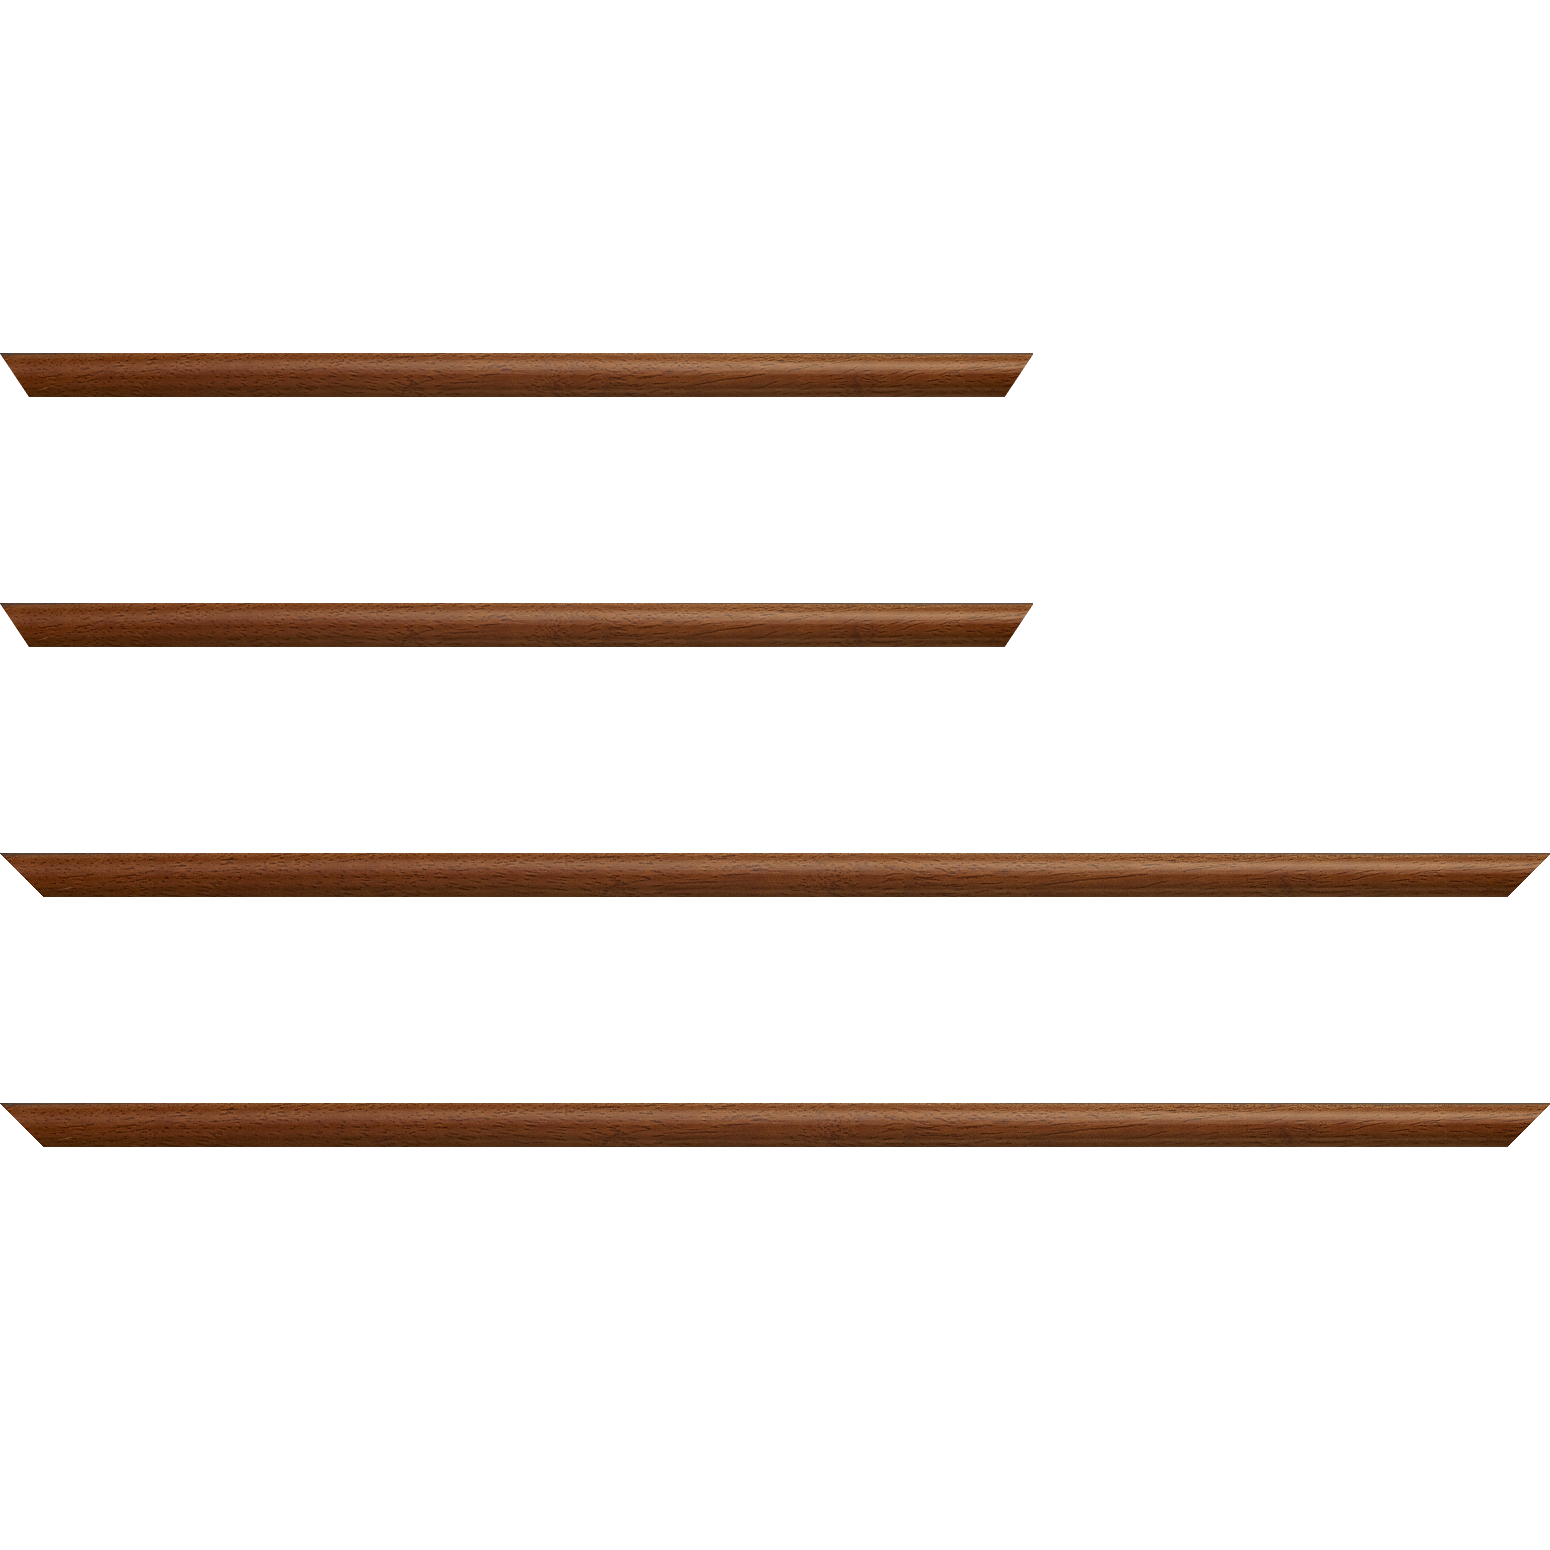 Baguette bois profil demi rond largeur 1.5cm couleur marron ton bois extérieur ébène - 20x60